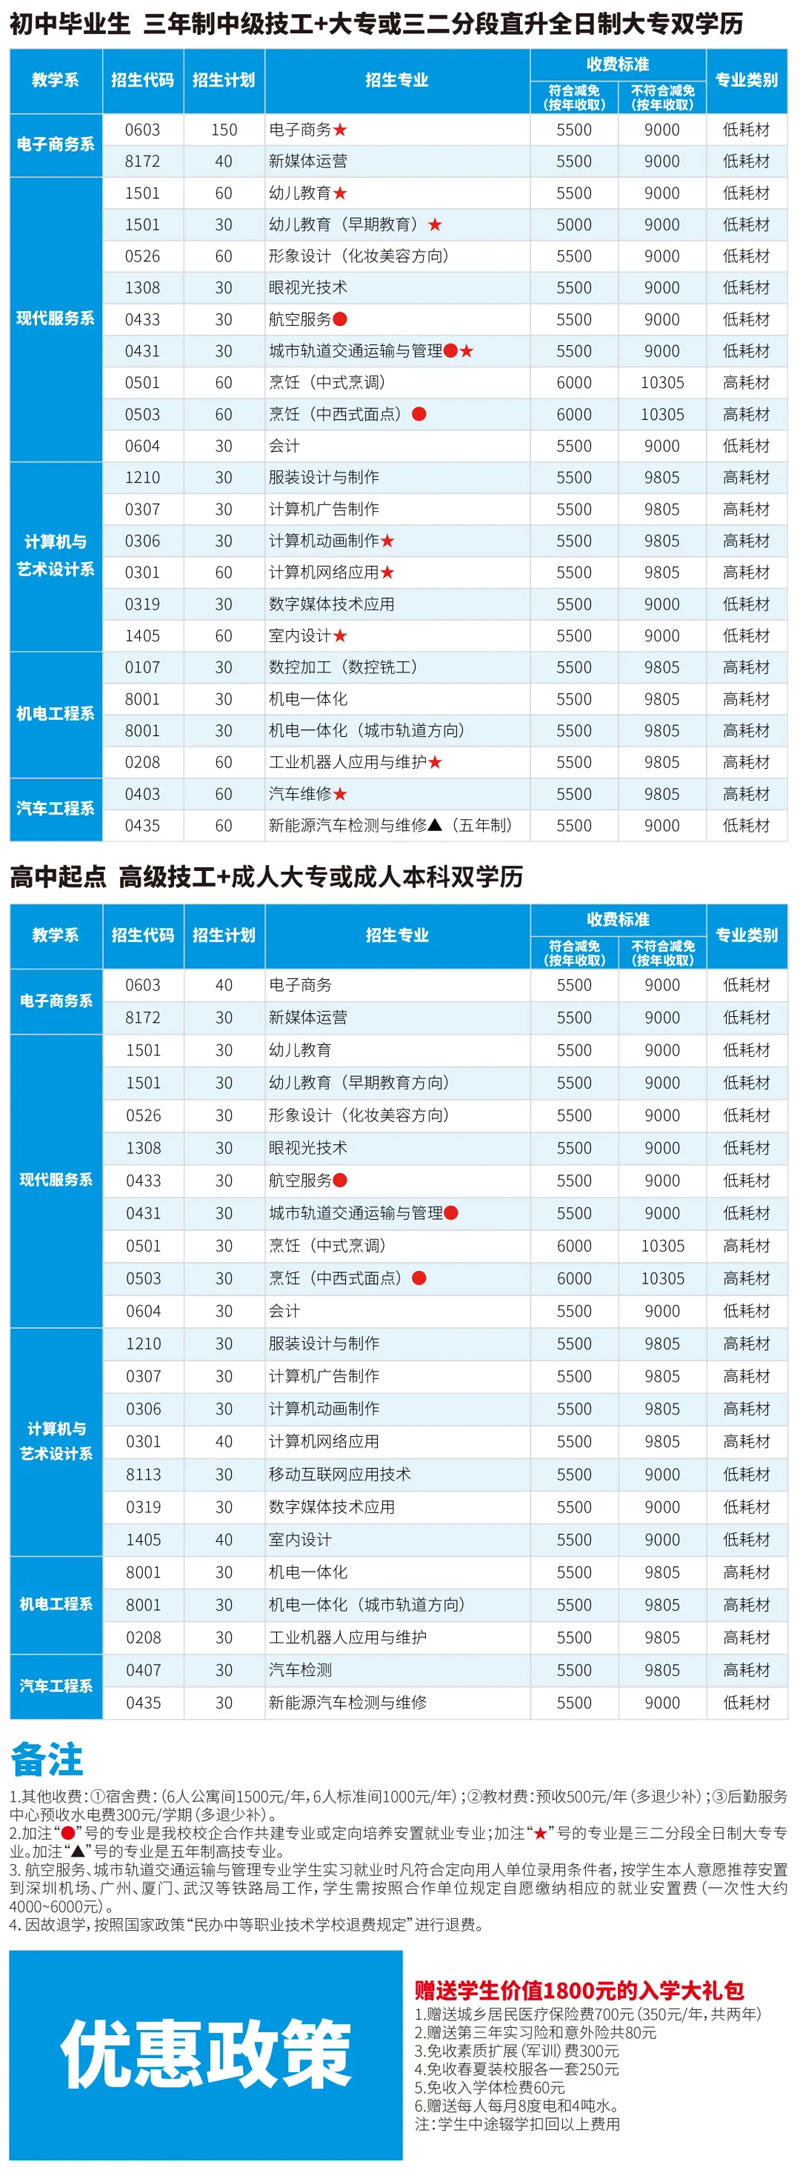 广州蓝天高级技工学校2021年招生简章(图5)